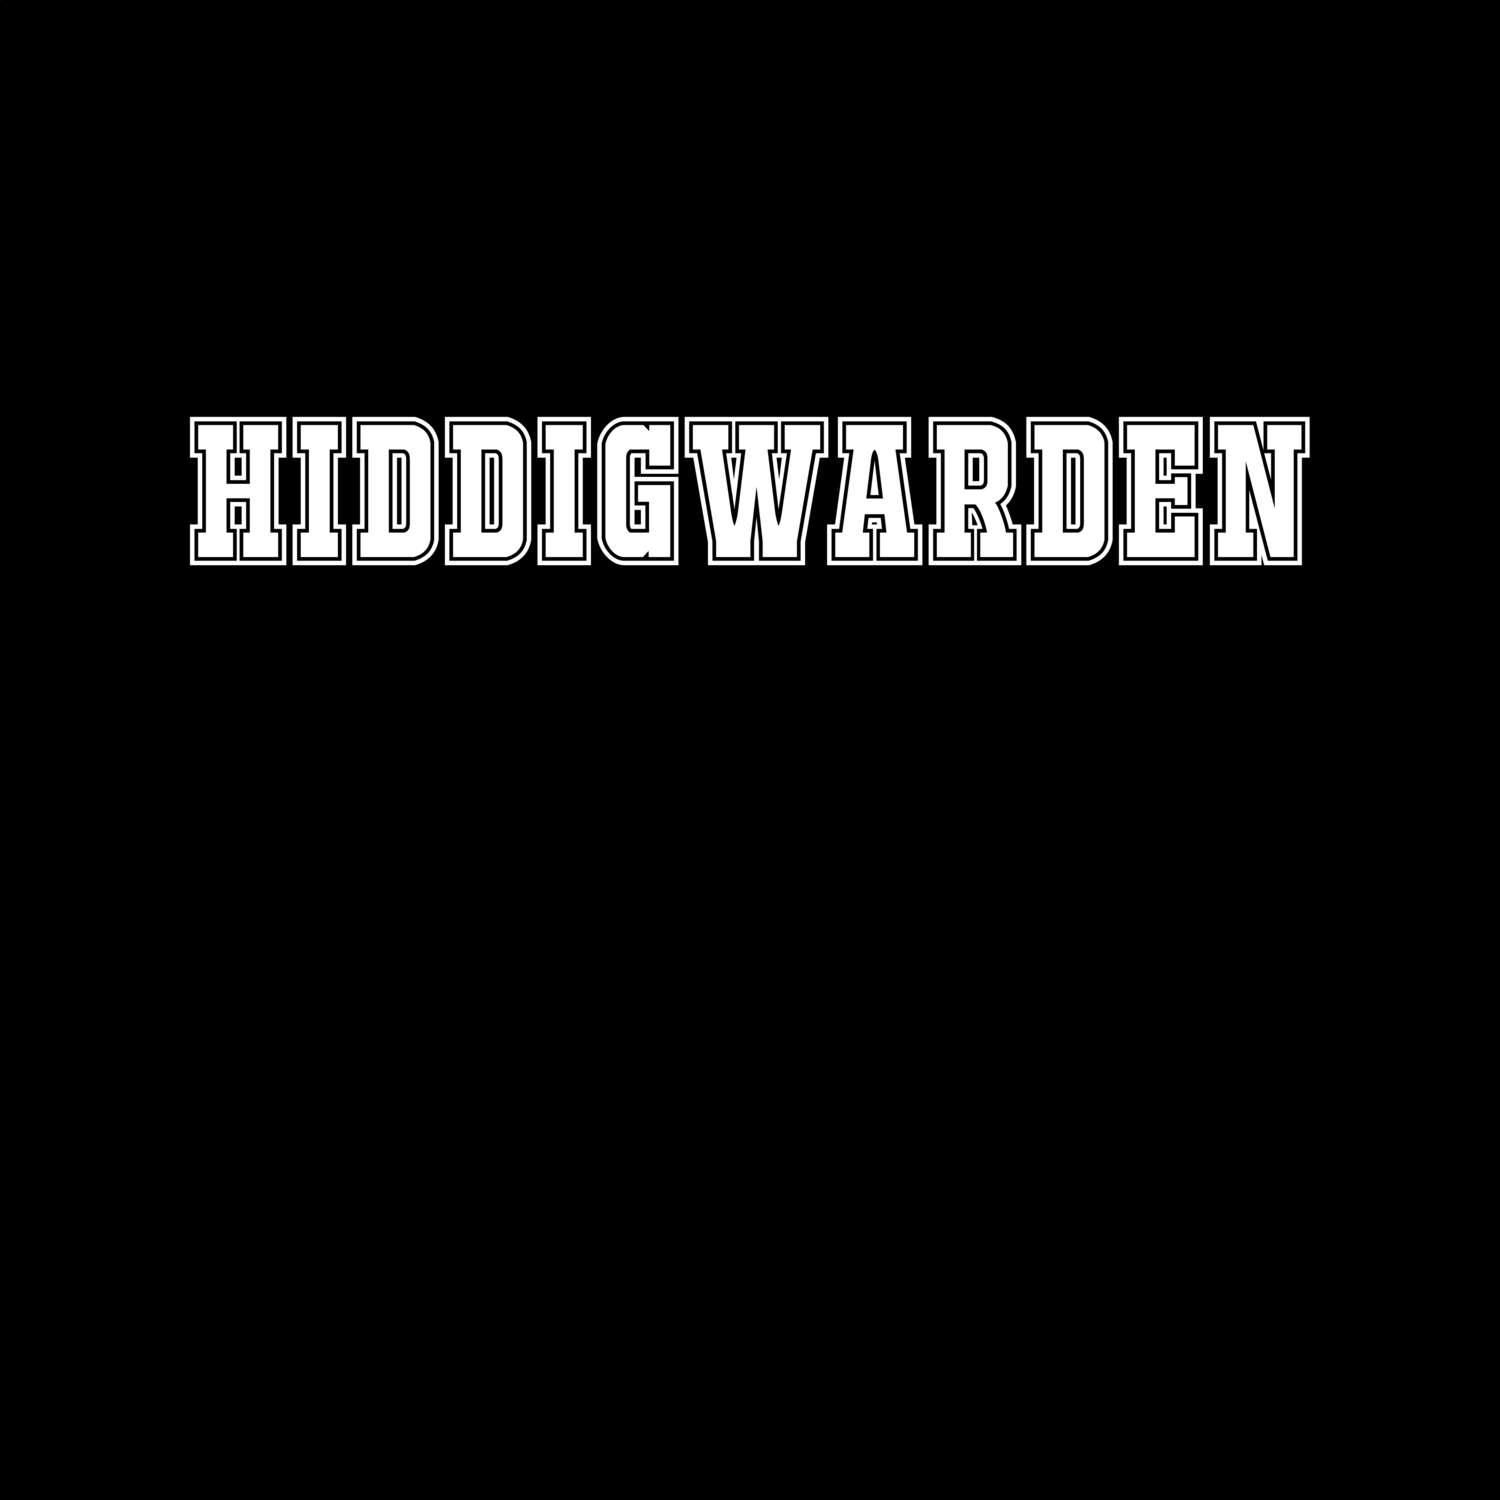 Hiddigwarden T-Shirt »Classic«